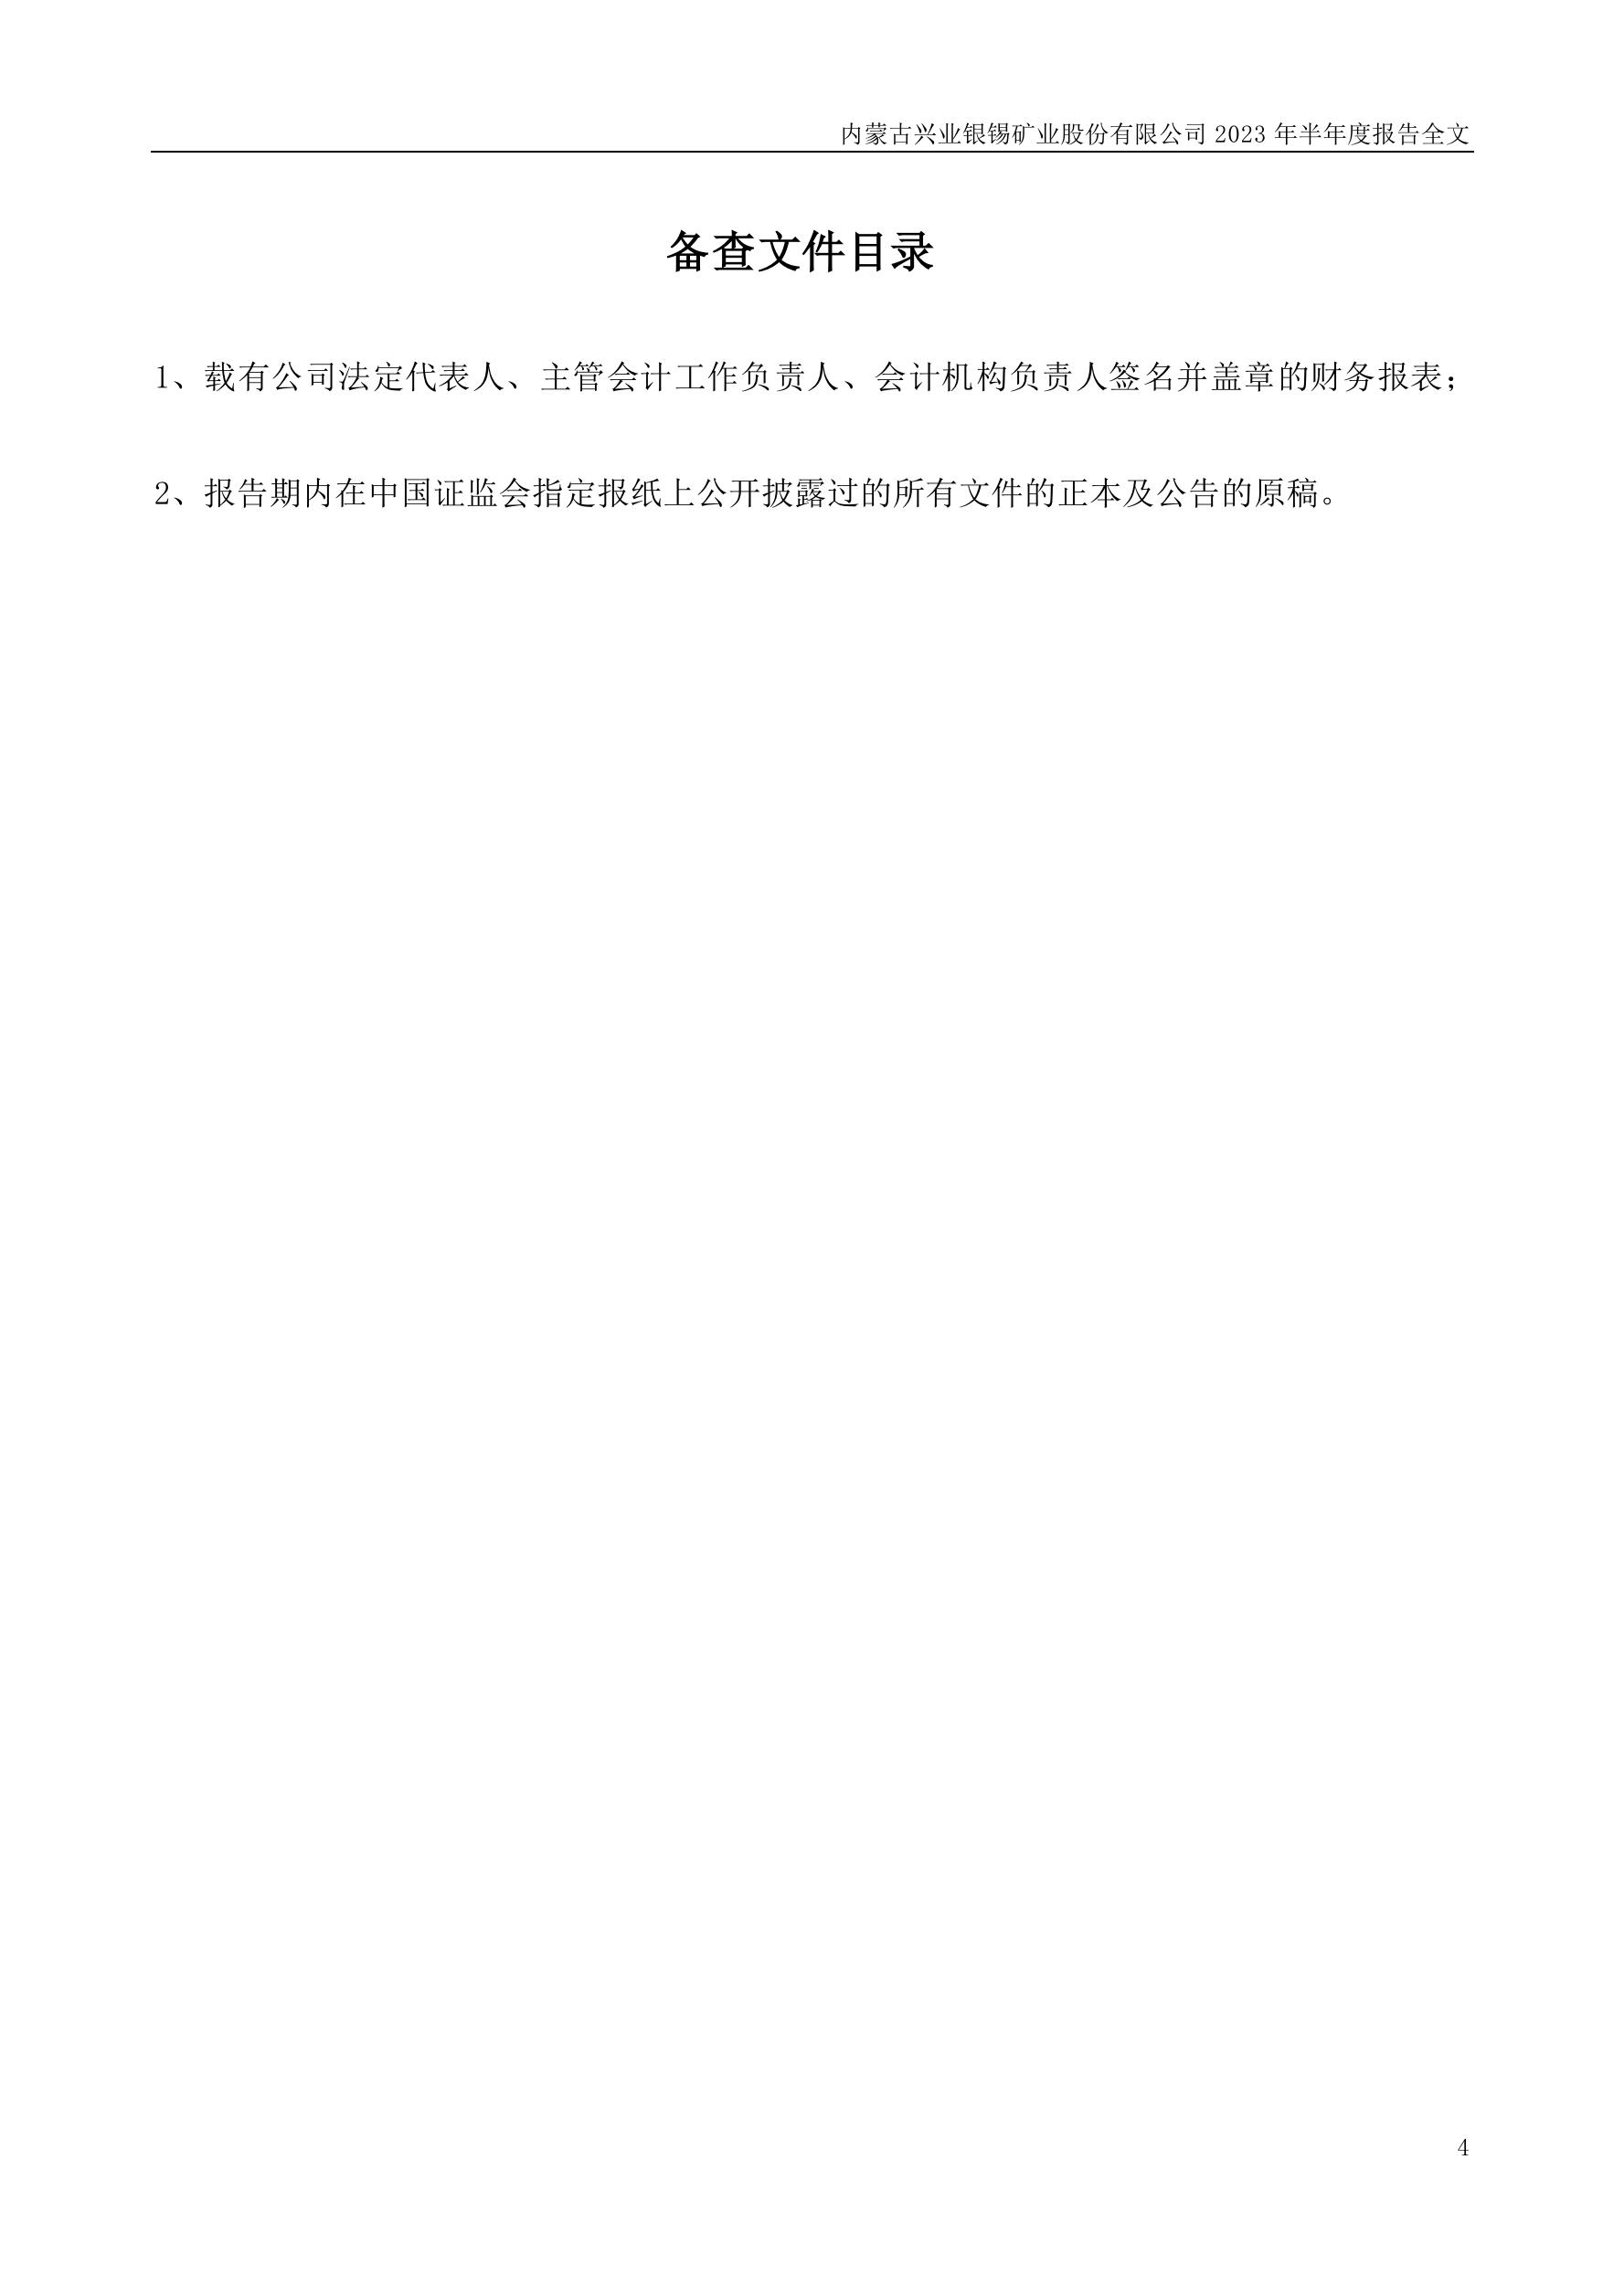 000426-兴业银锡-2023年半年度报告.PDF_报告-报告厅